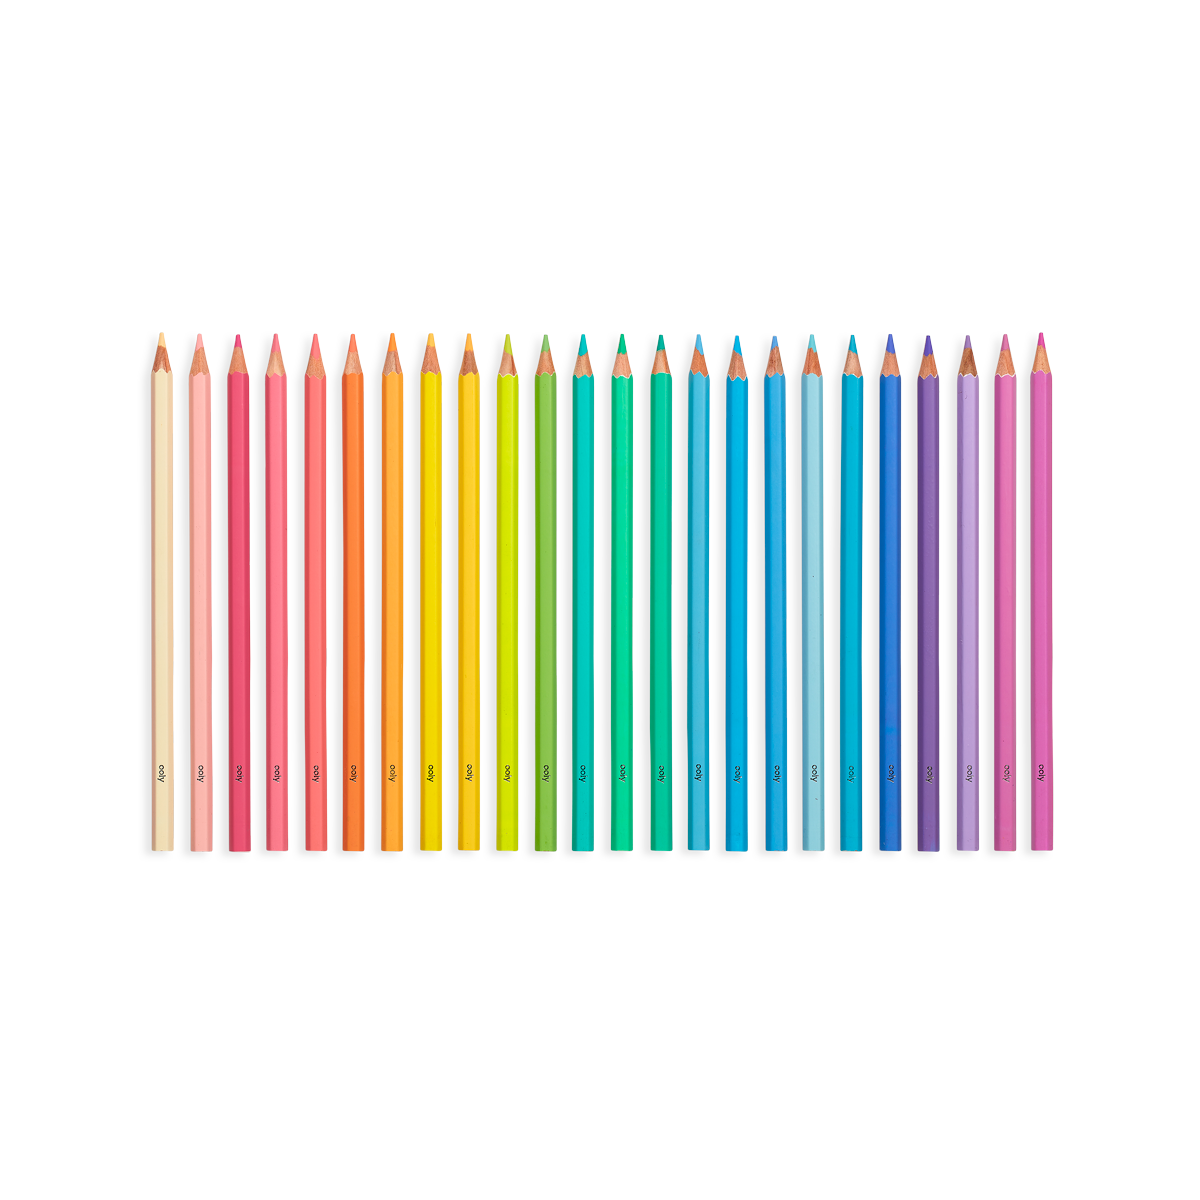 https://easytot.com/cdn/shop/products/128-159-Pastel-Hues-Colored-Pencils-Set-of-24-O1_1445x.png?v=1647353501